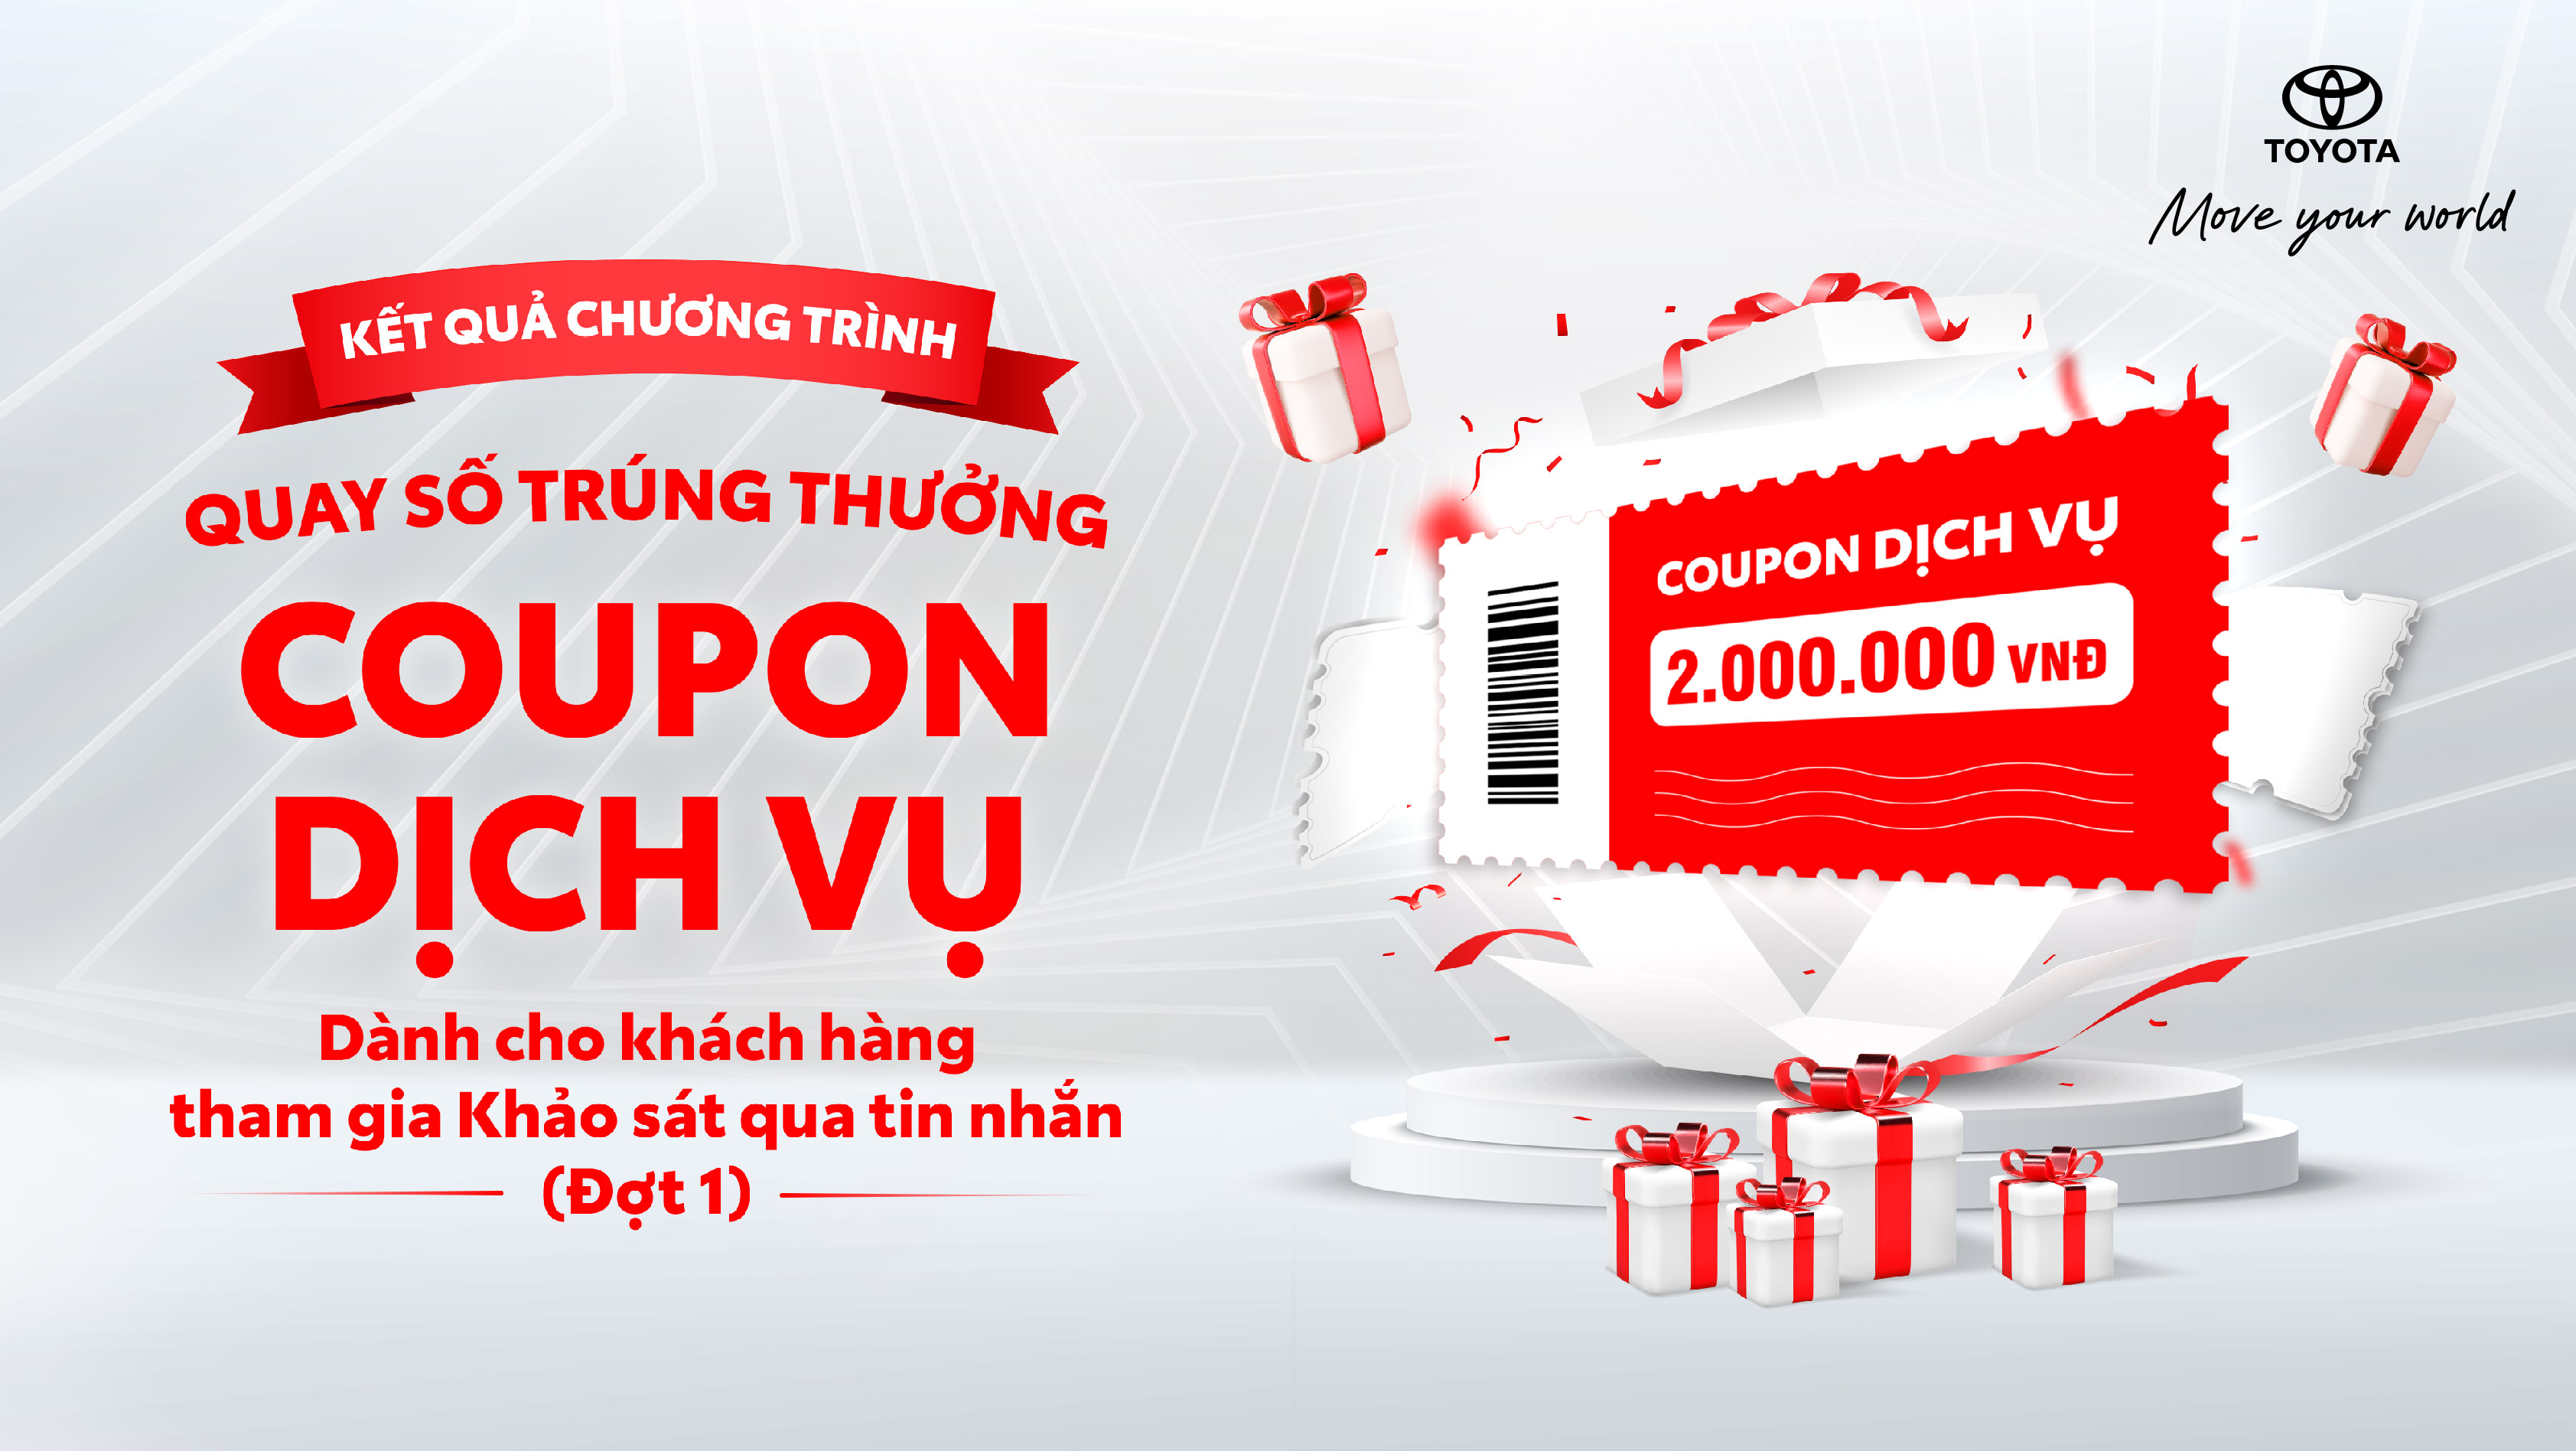 Toyota Việt Nam tiếp tục triển khai chương trình quay số trúng thưởng coupon dịch vụ cho khách hàng